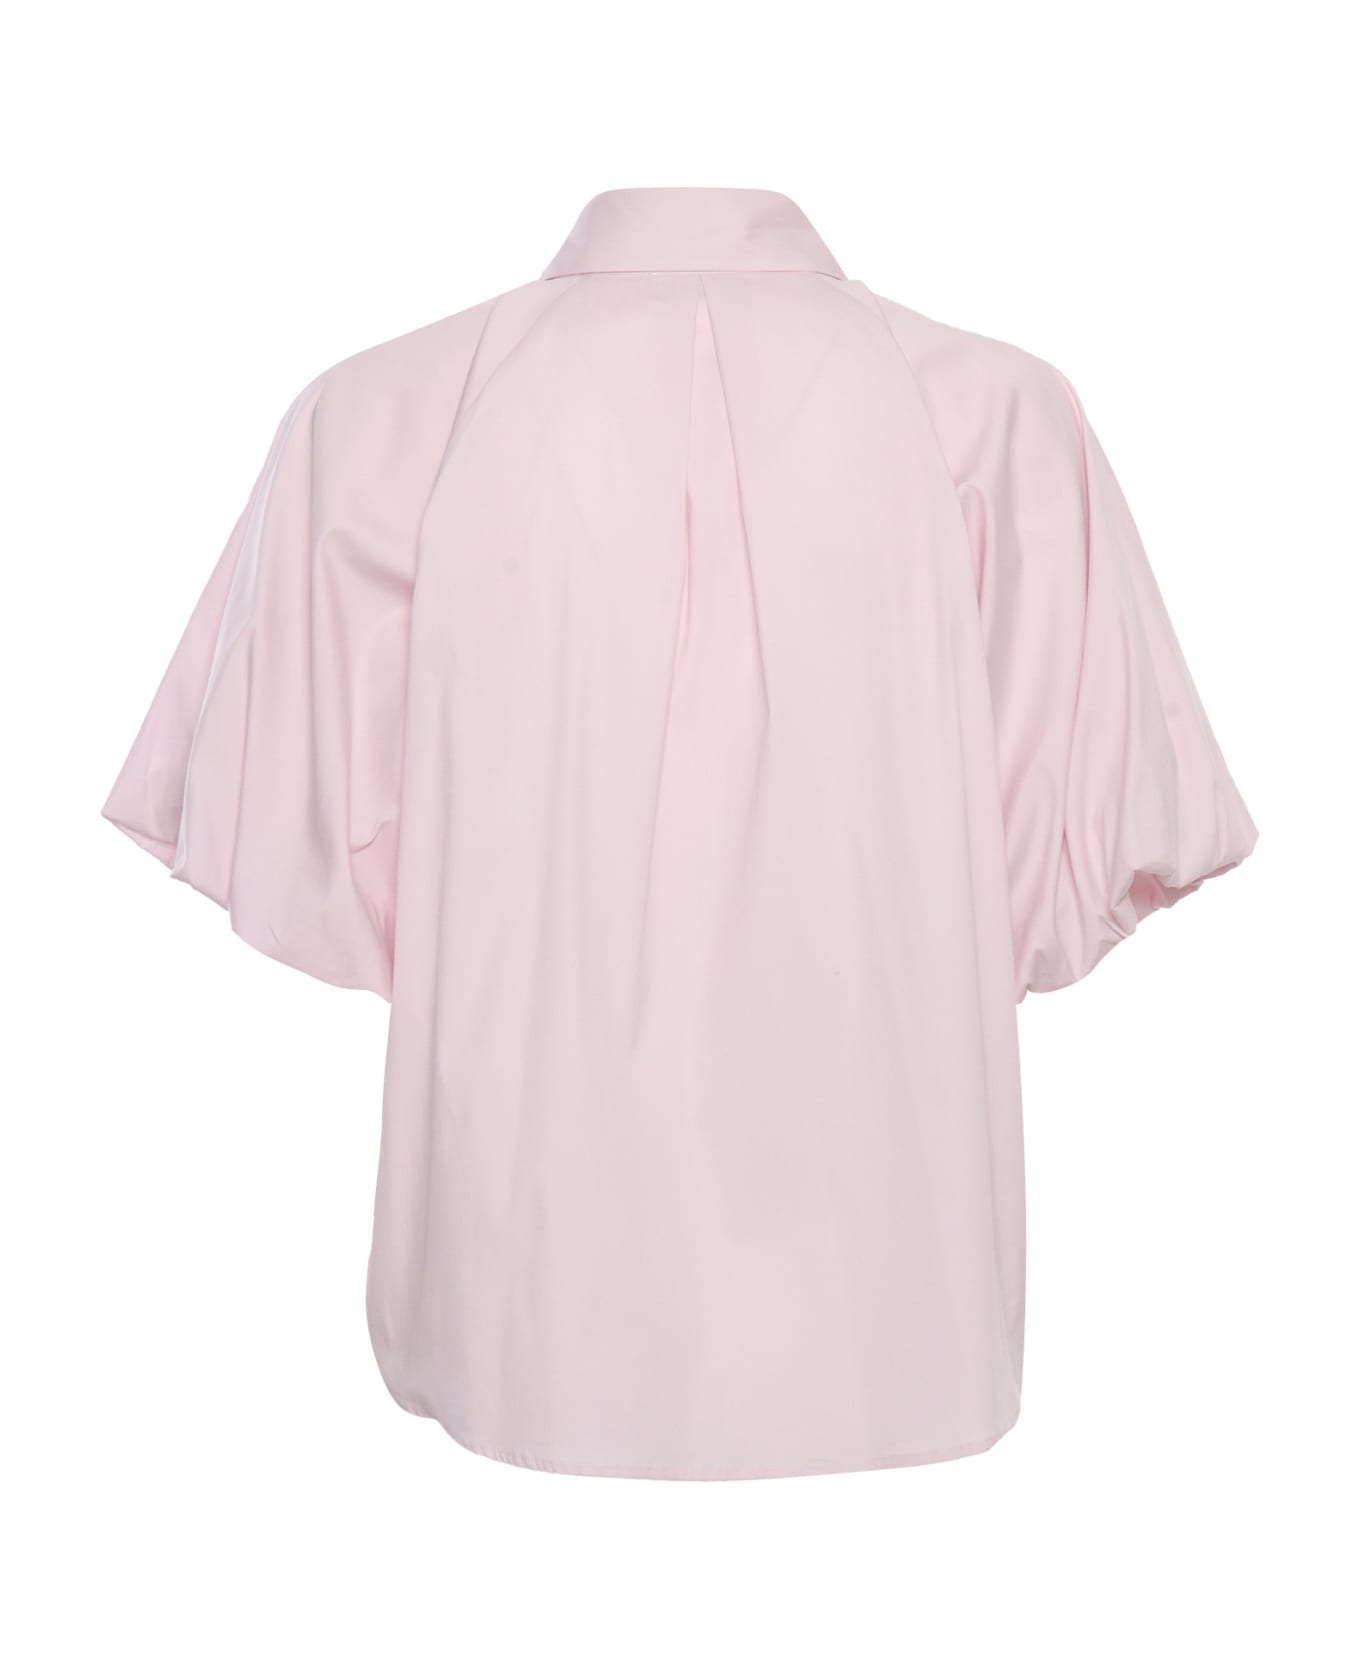 Mazzarelli Pink Shirt - PINK